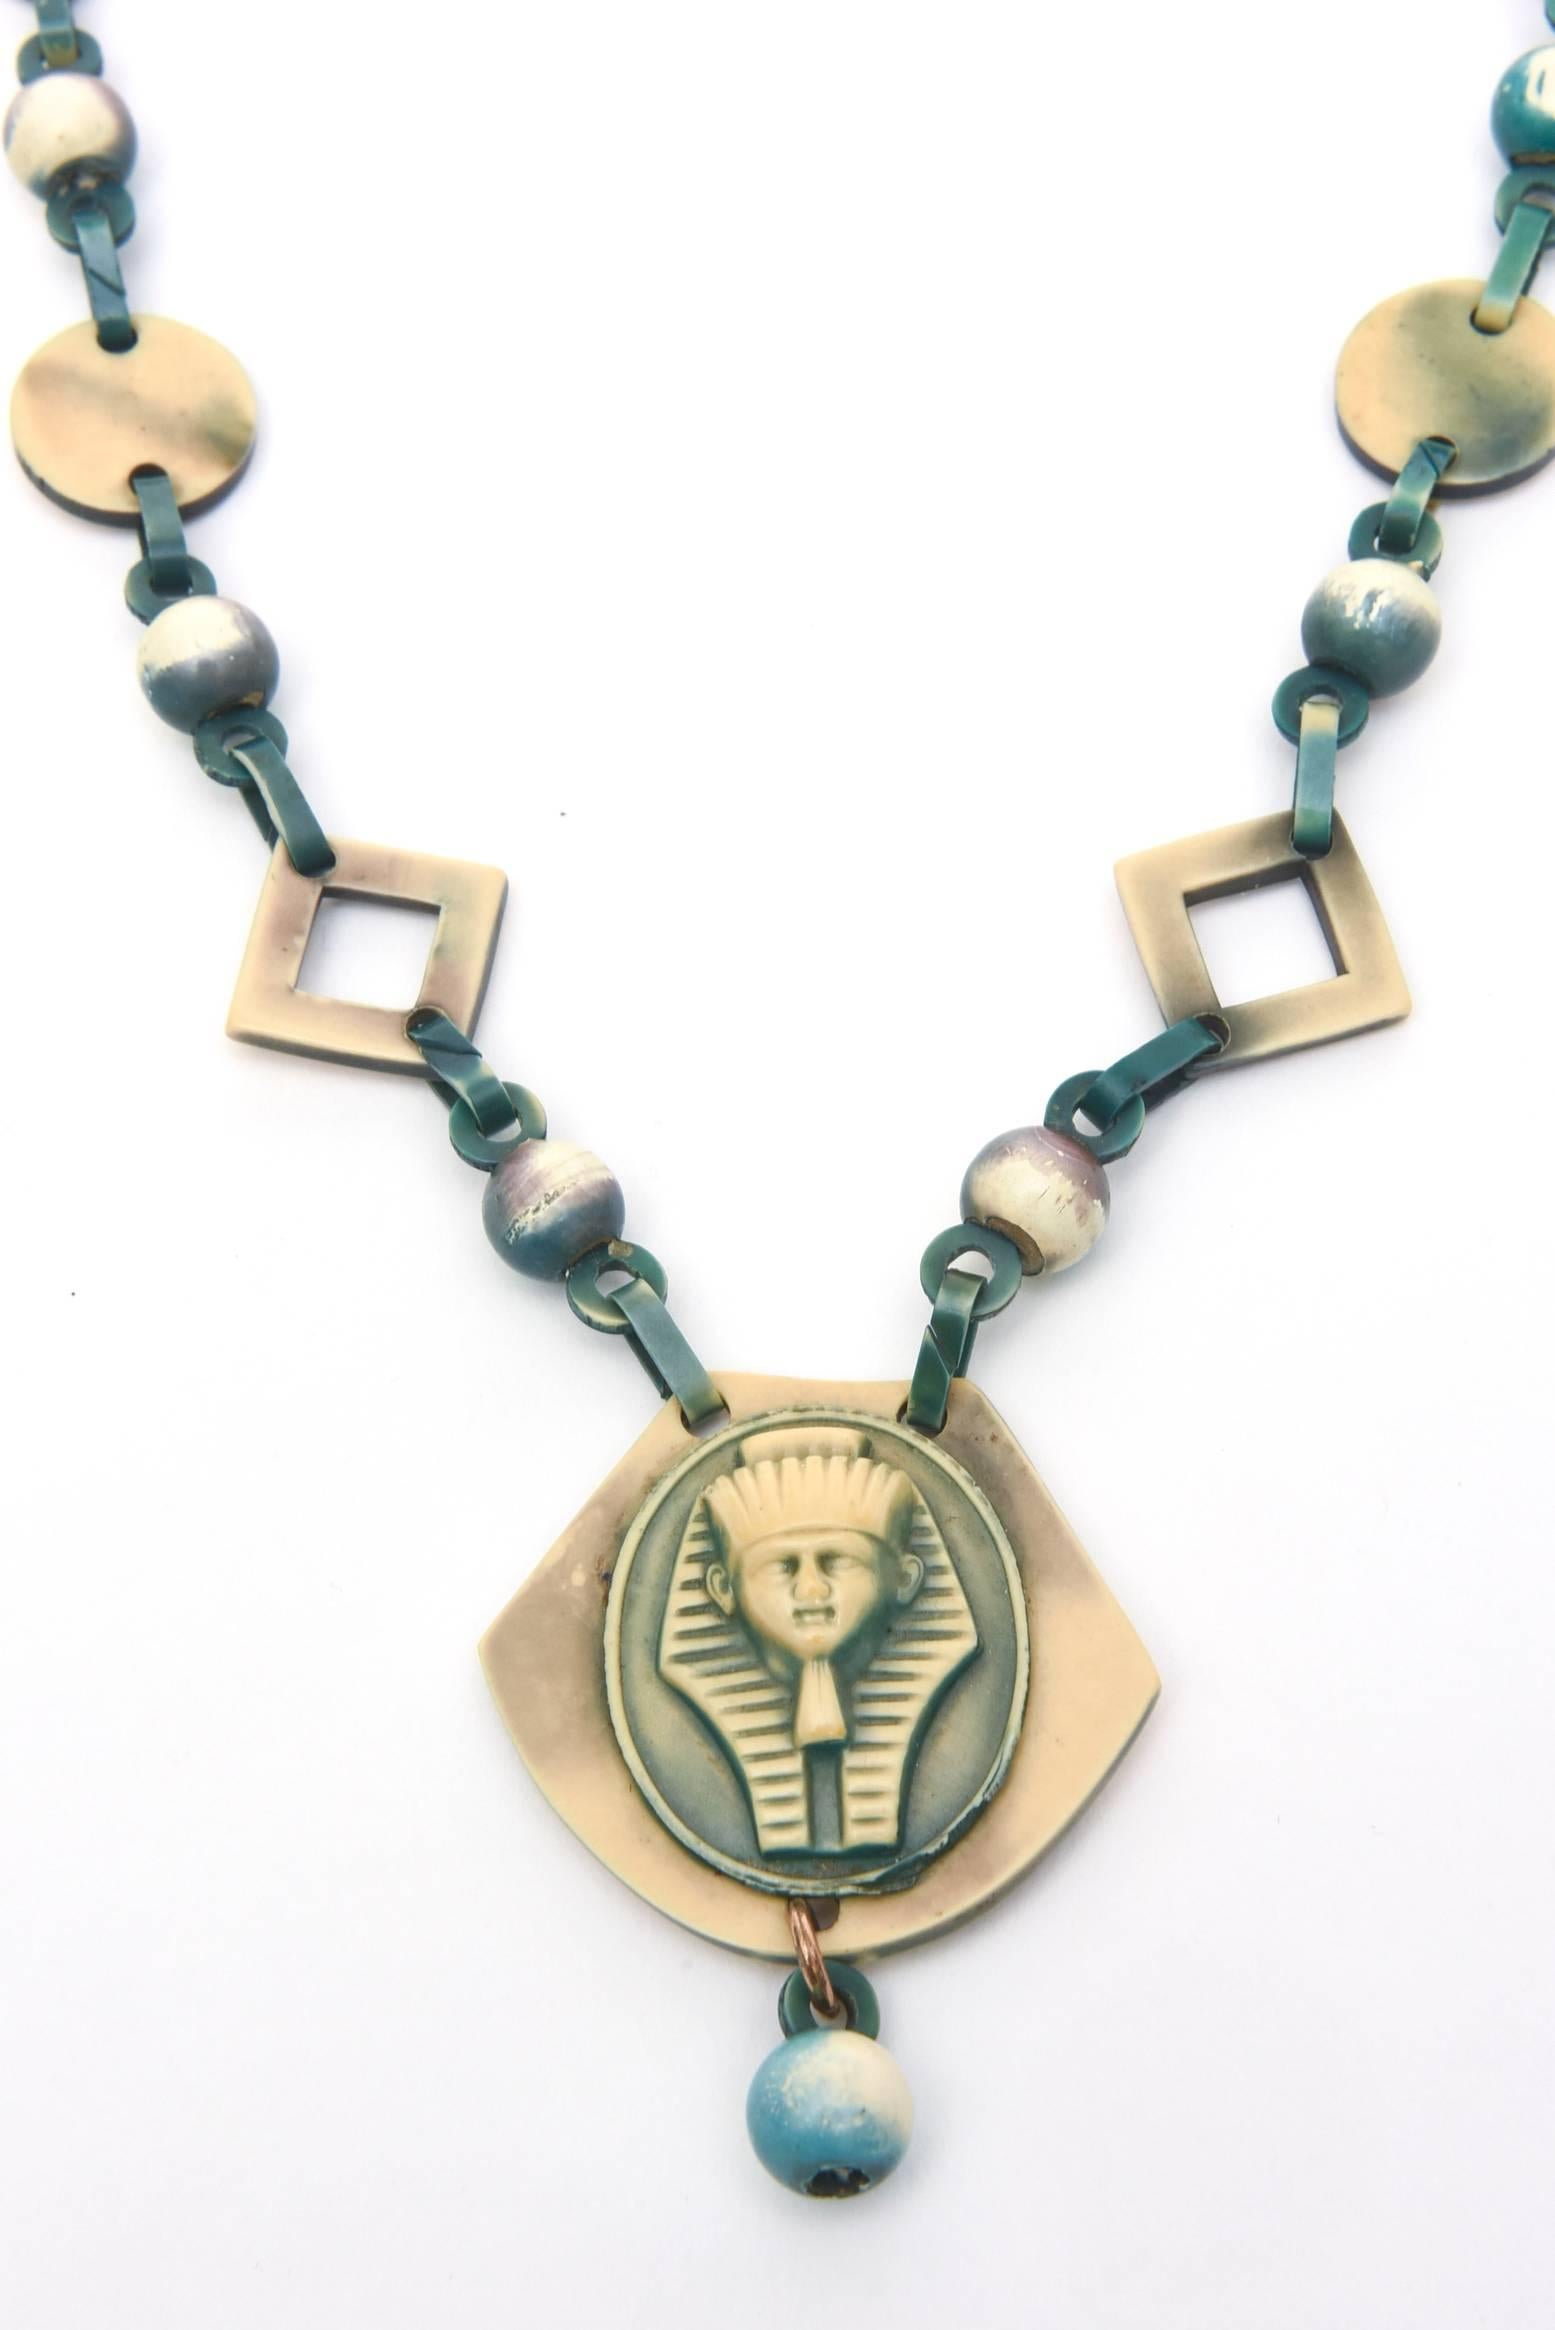 Ce collier vintage intéressant et semi-long avec de belles couleurs de celluloïd ; qui est comme de la bakélite a une influence néo-égyptienne avec une sensation d'art déco et d'époque tout en étant moderne. Le celluloïd date de la même époque.